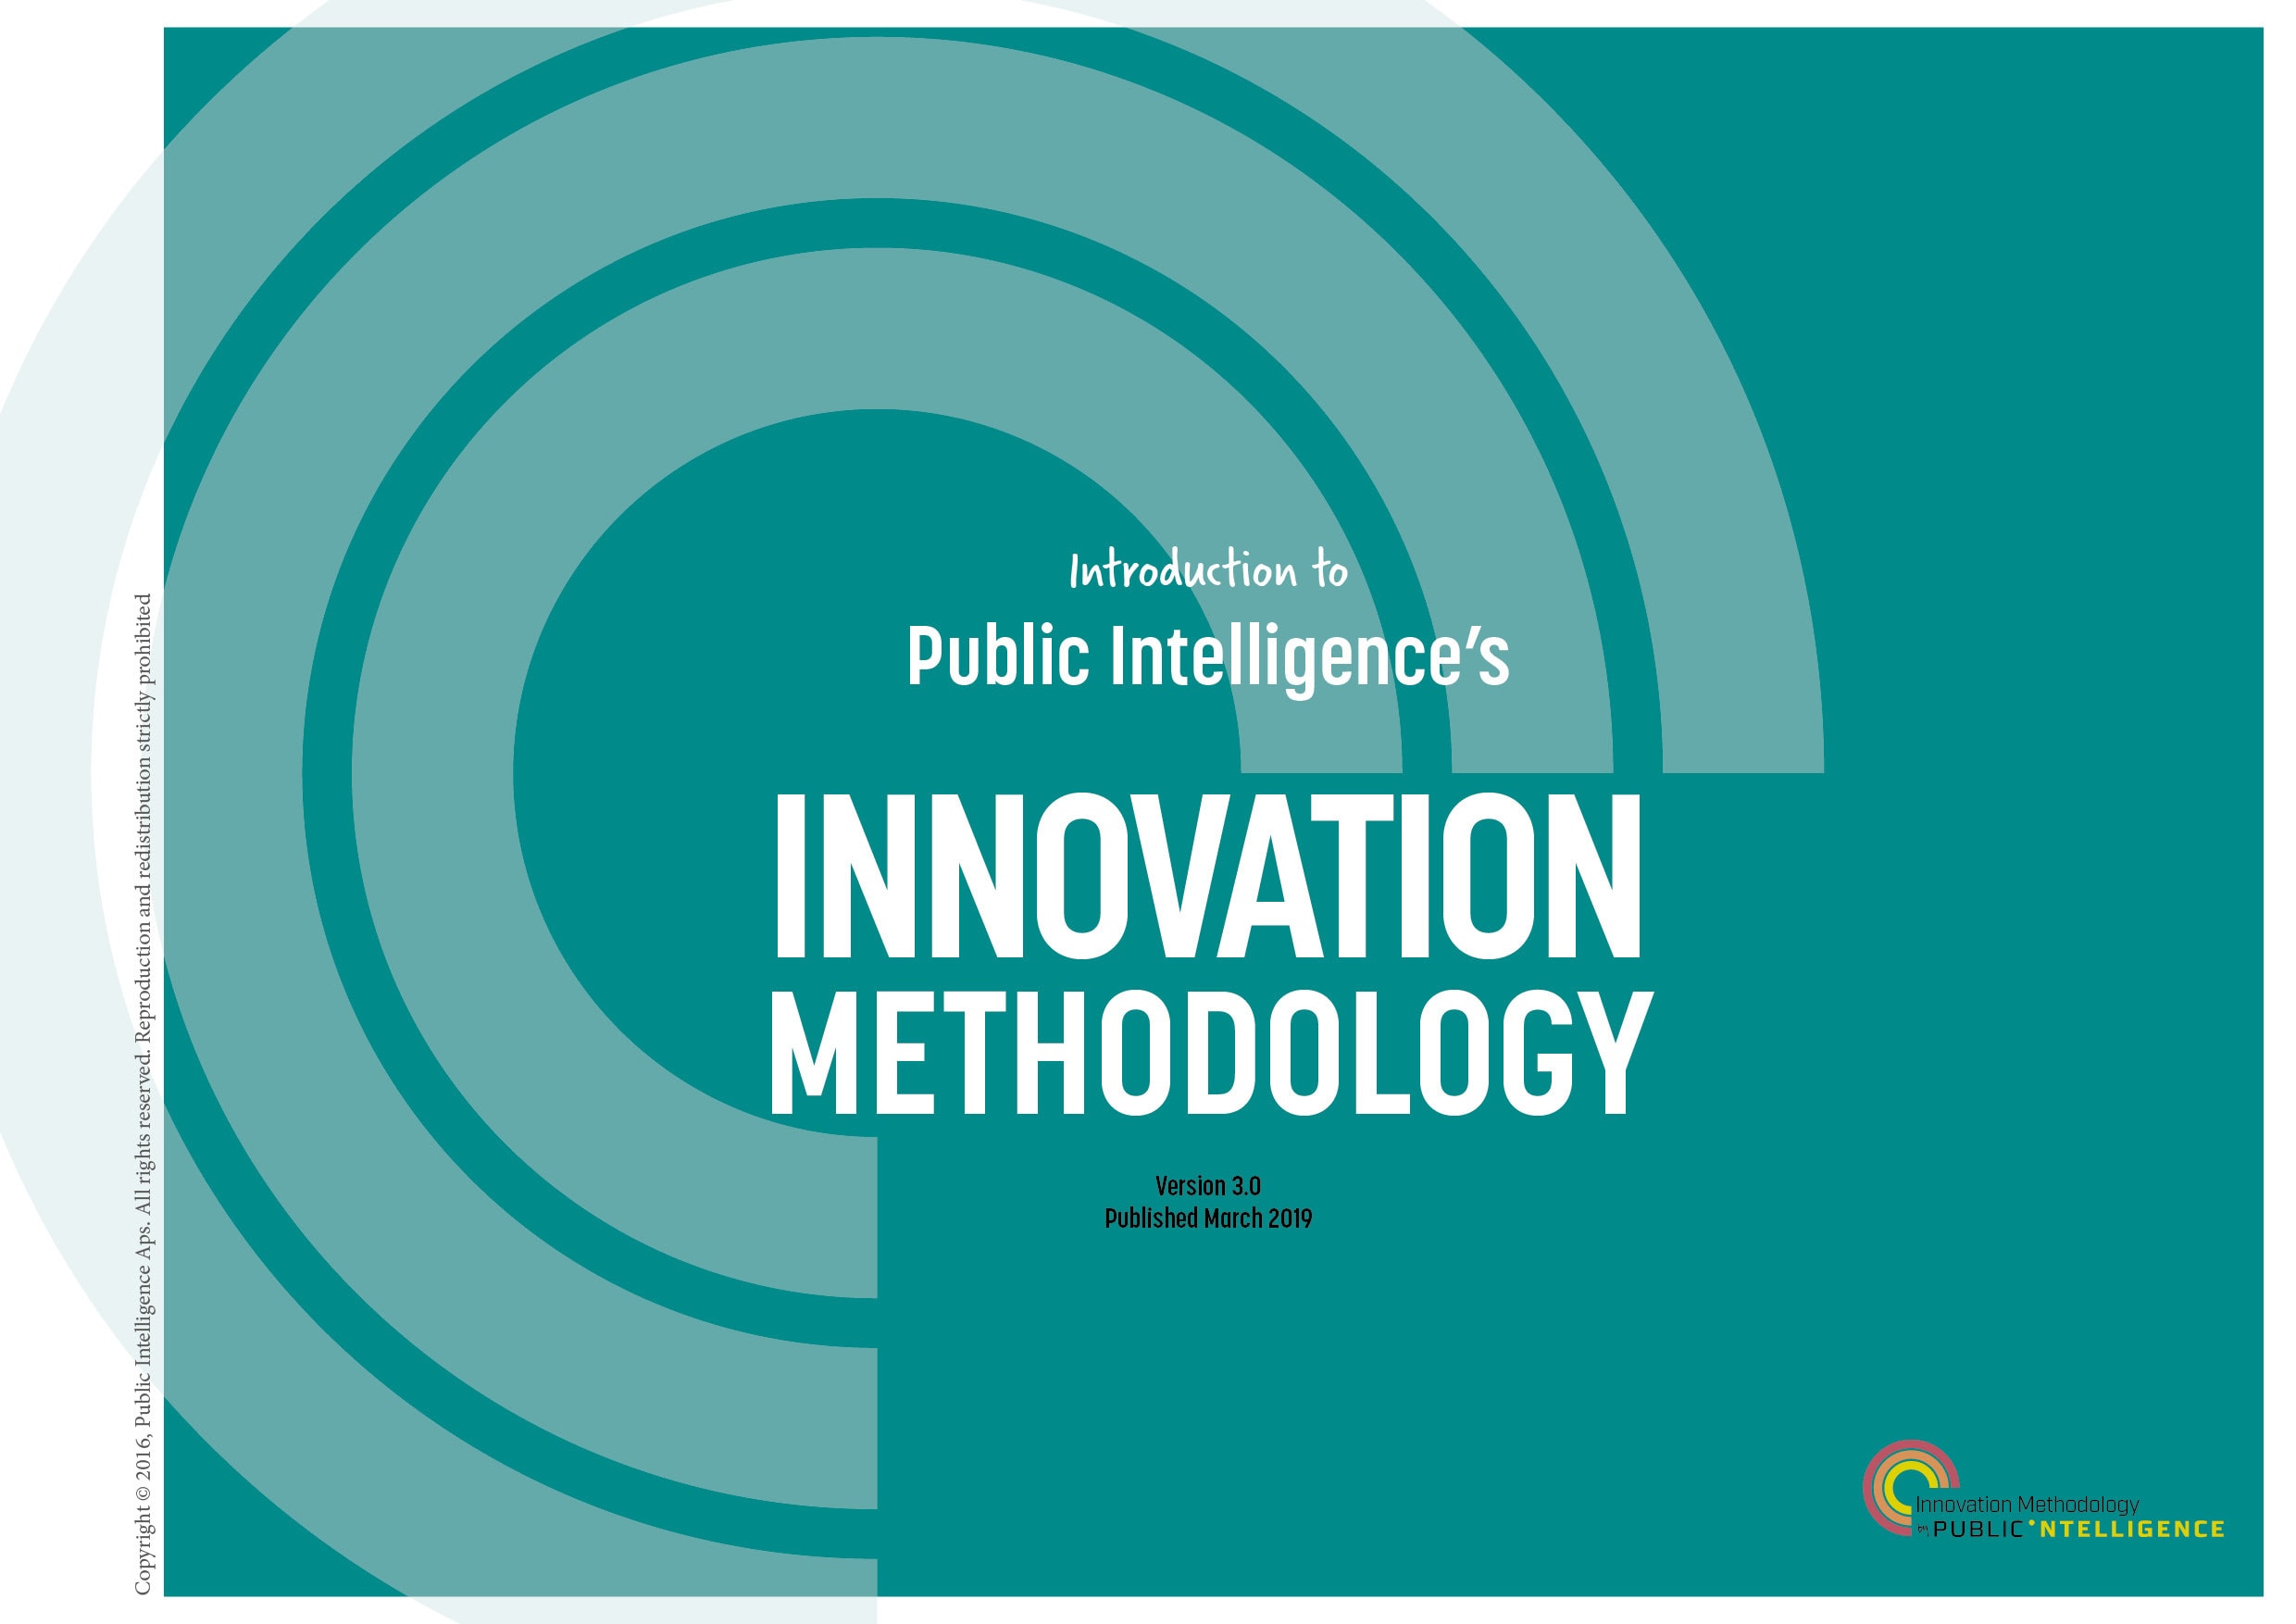 Public Intelligence’s methodology